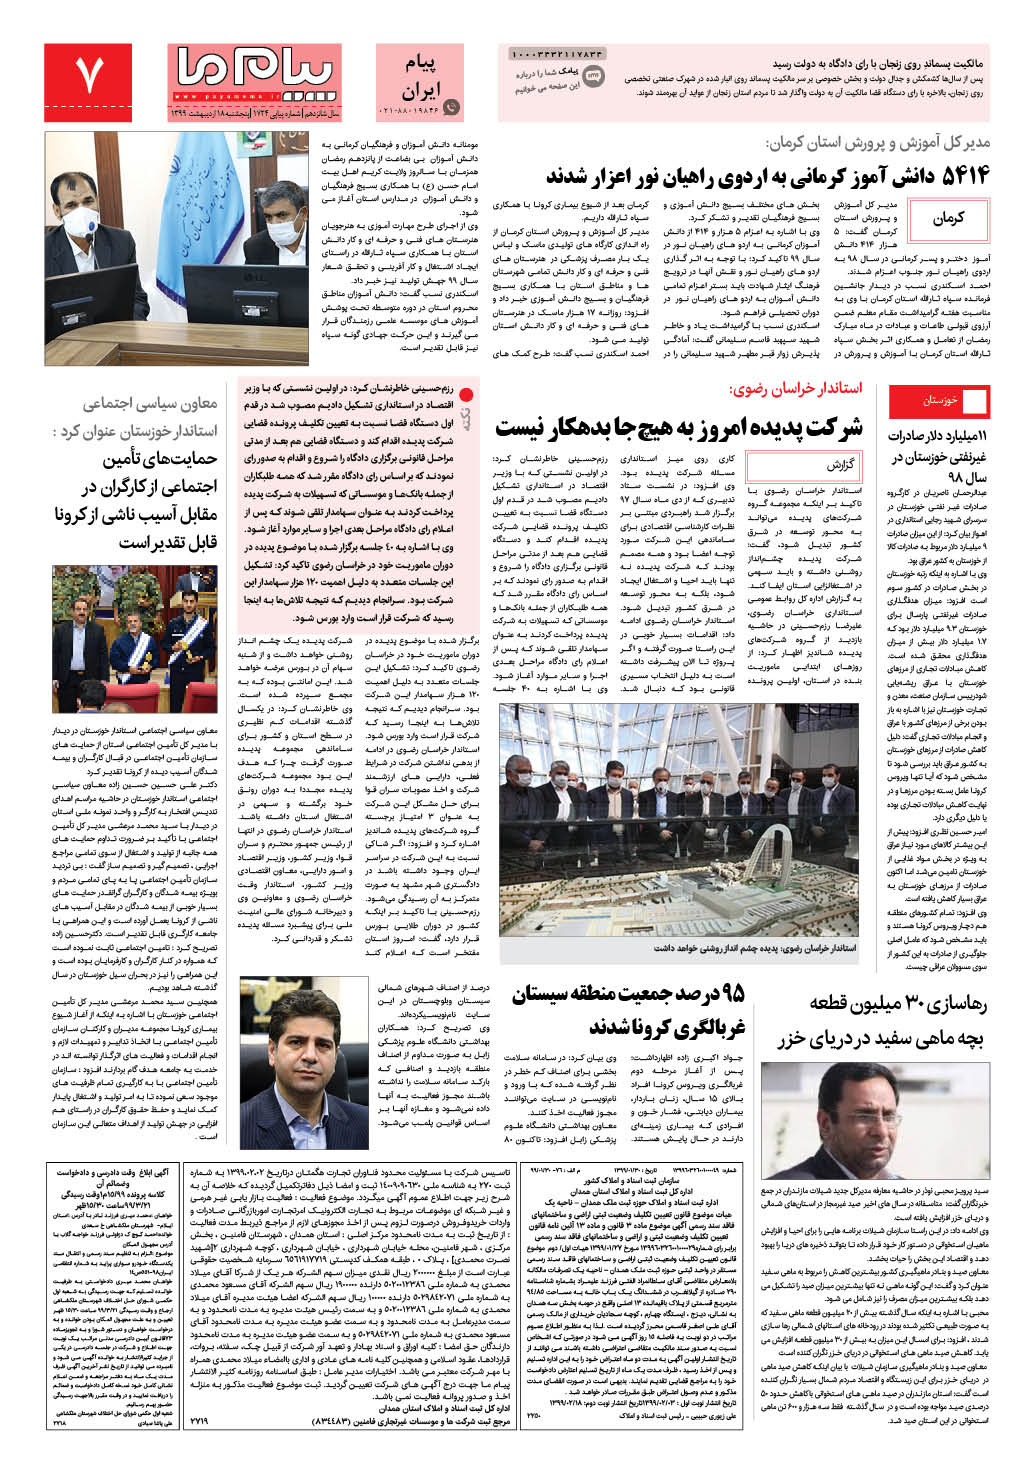 صفحه پیام ایران شماره 1724 روزنامه پیام ما